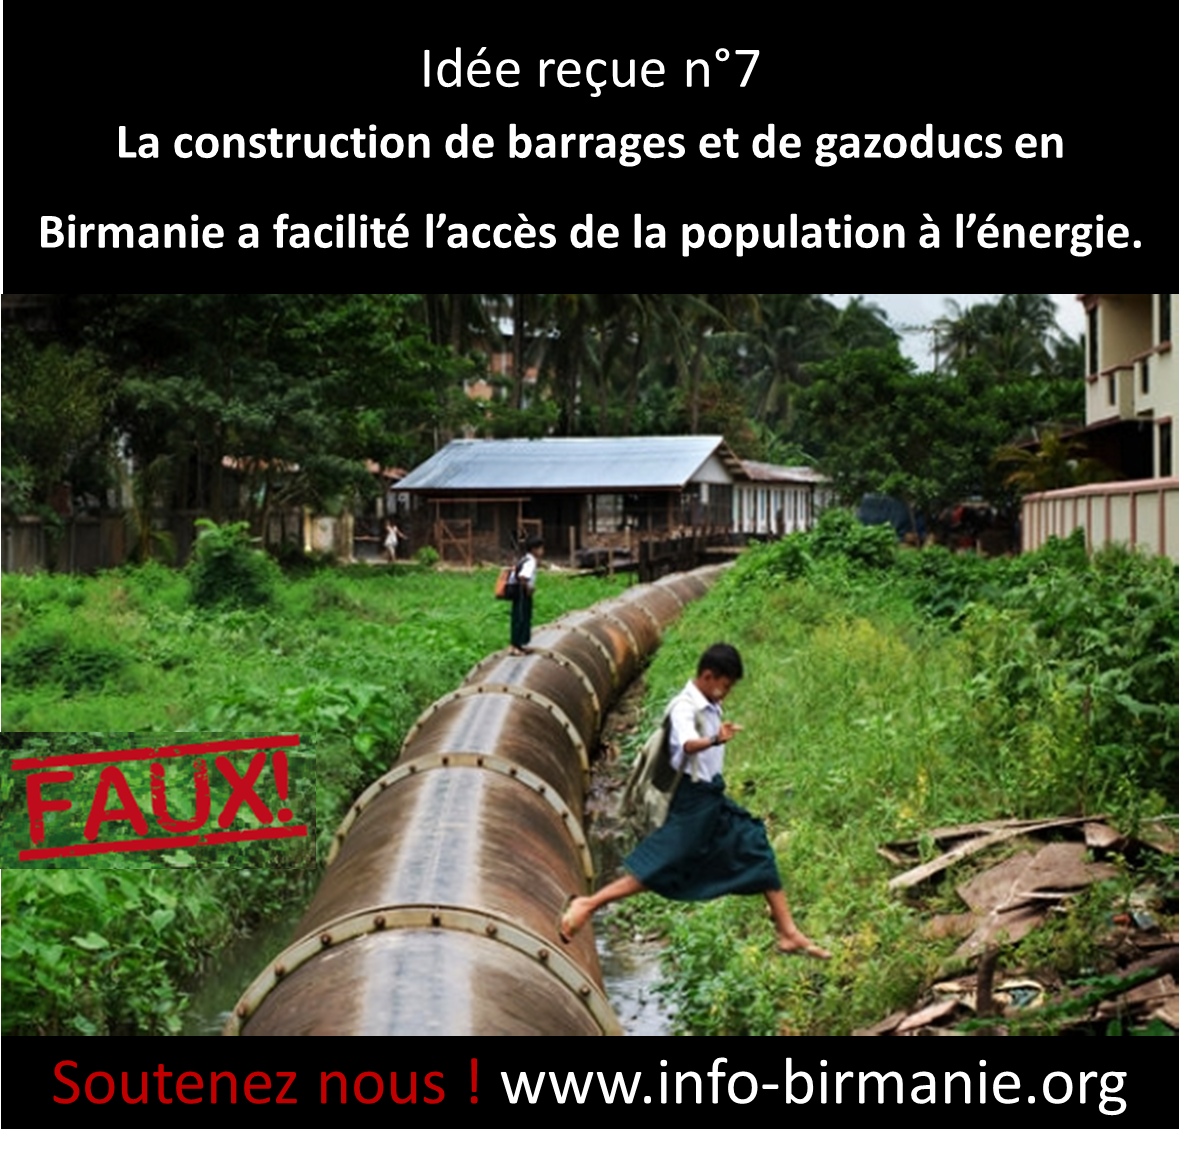 Idée reçue n°7: La construction de barrages et de gazoducs en Birmanie a facilité l’accès de la population à l’énergie.